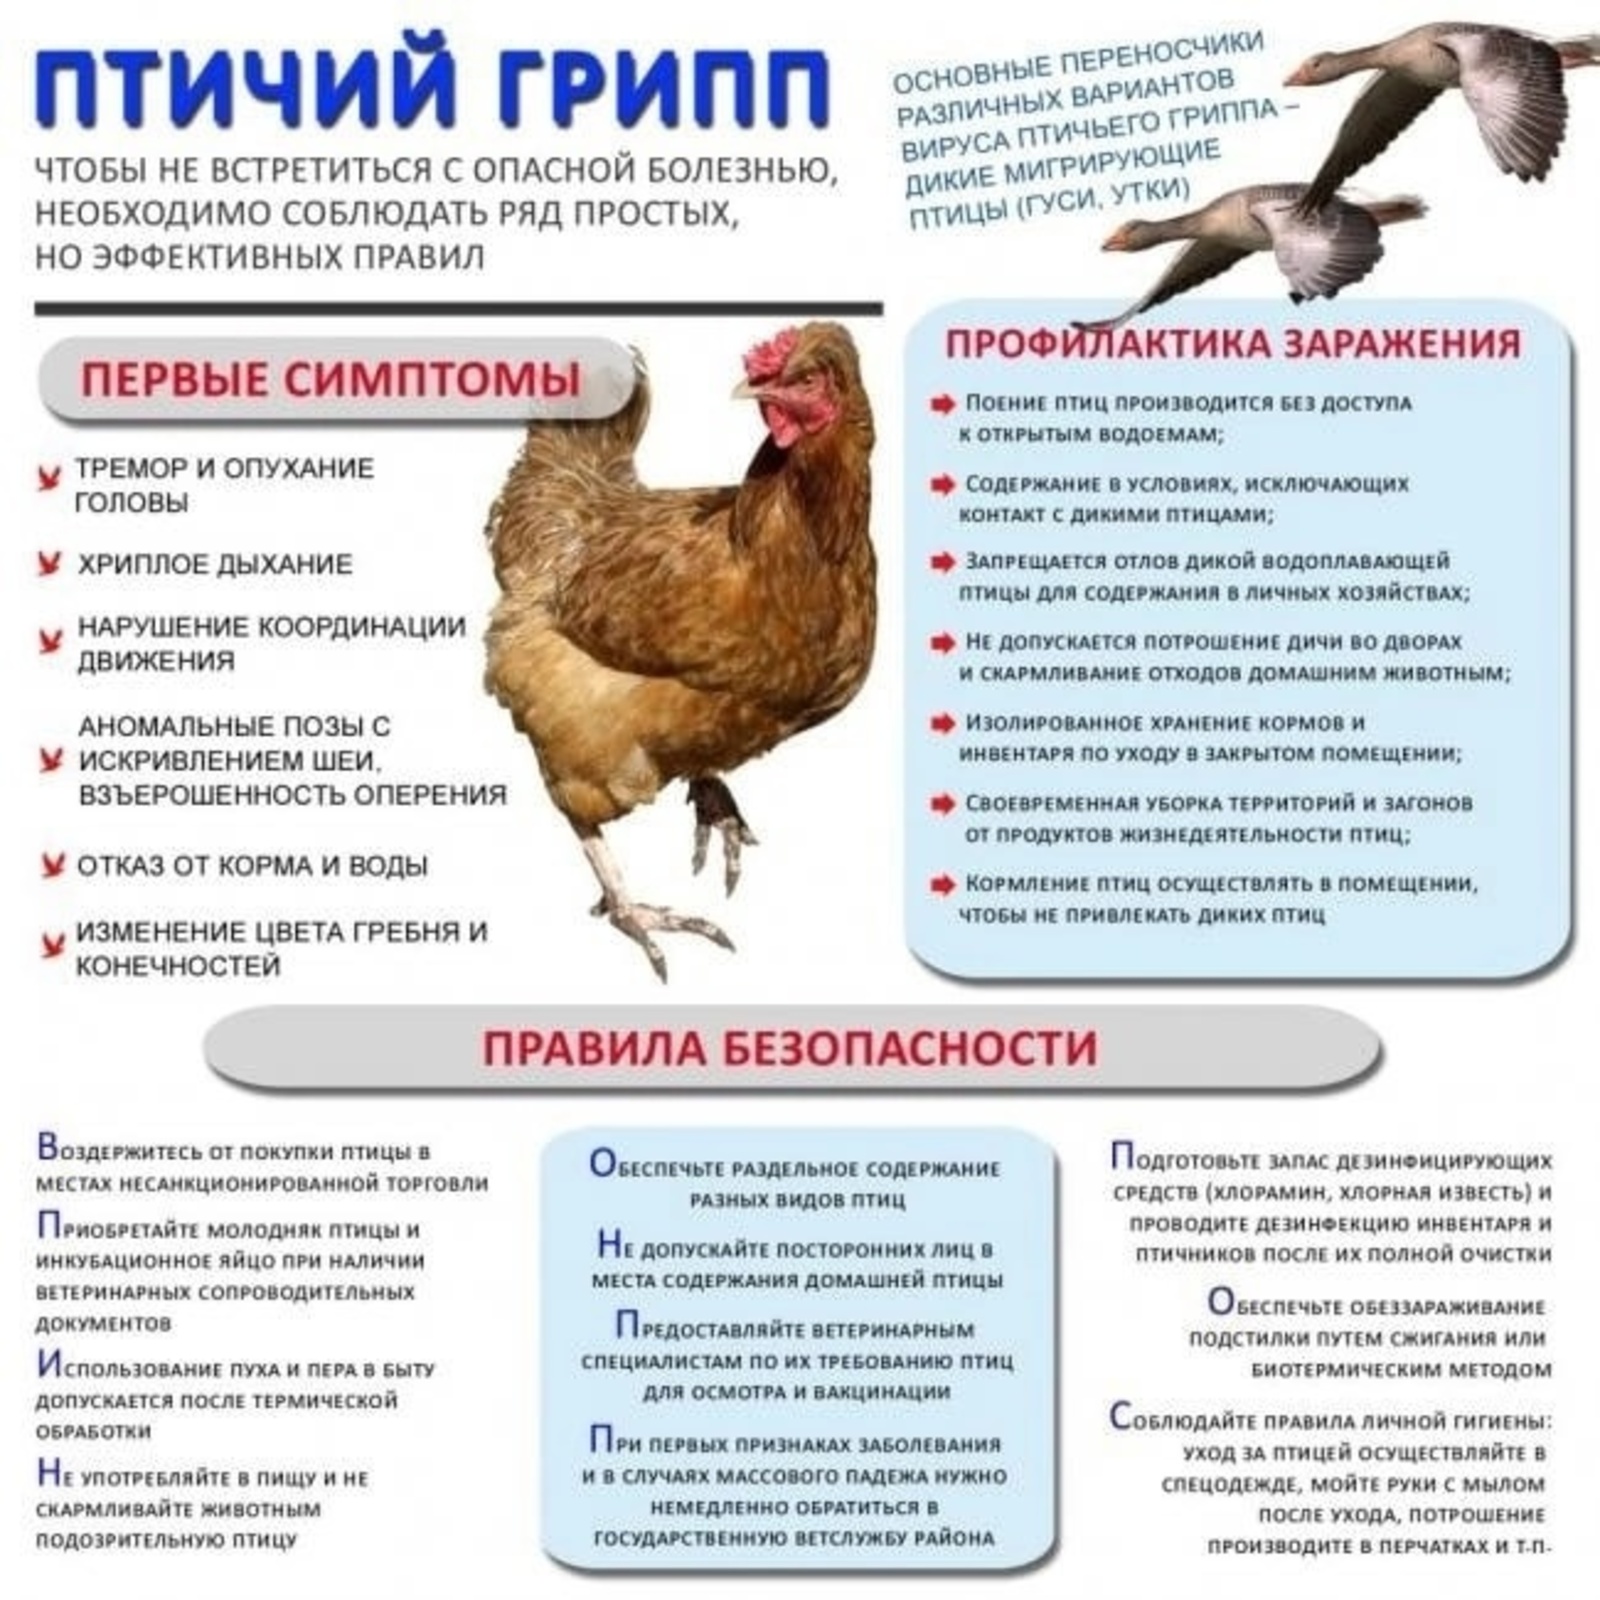 Высокопатогенный грипп птиц – реальная угроза!